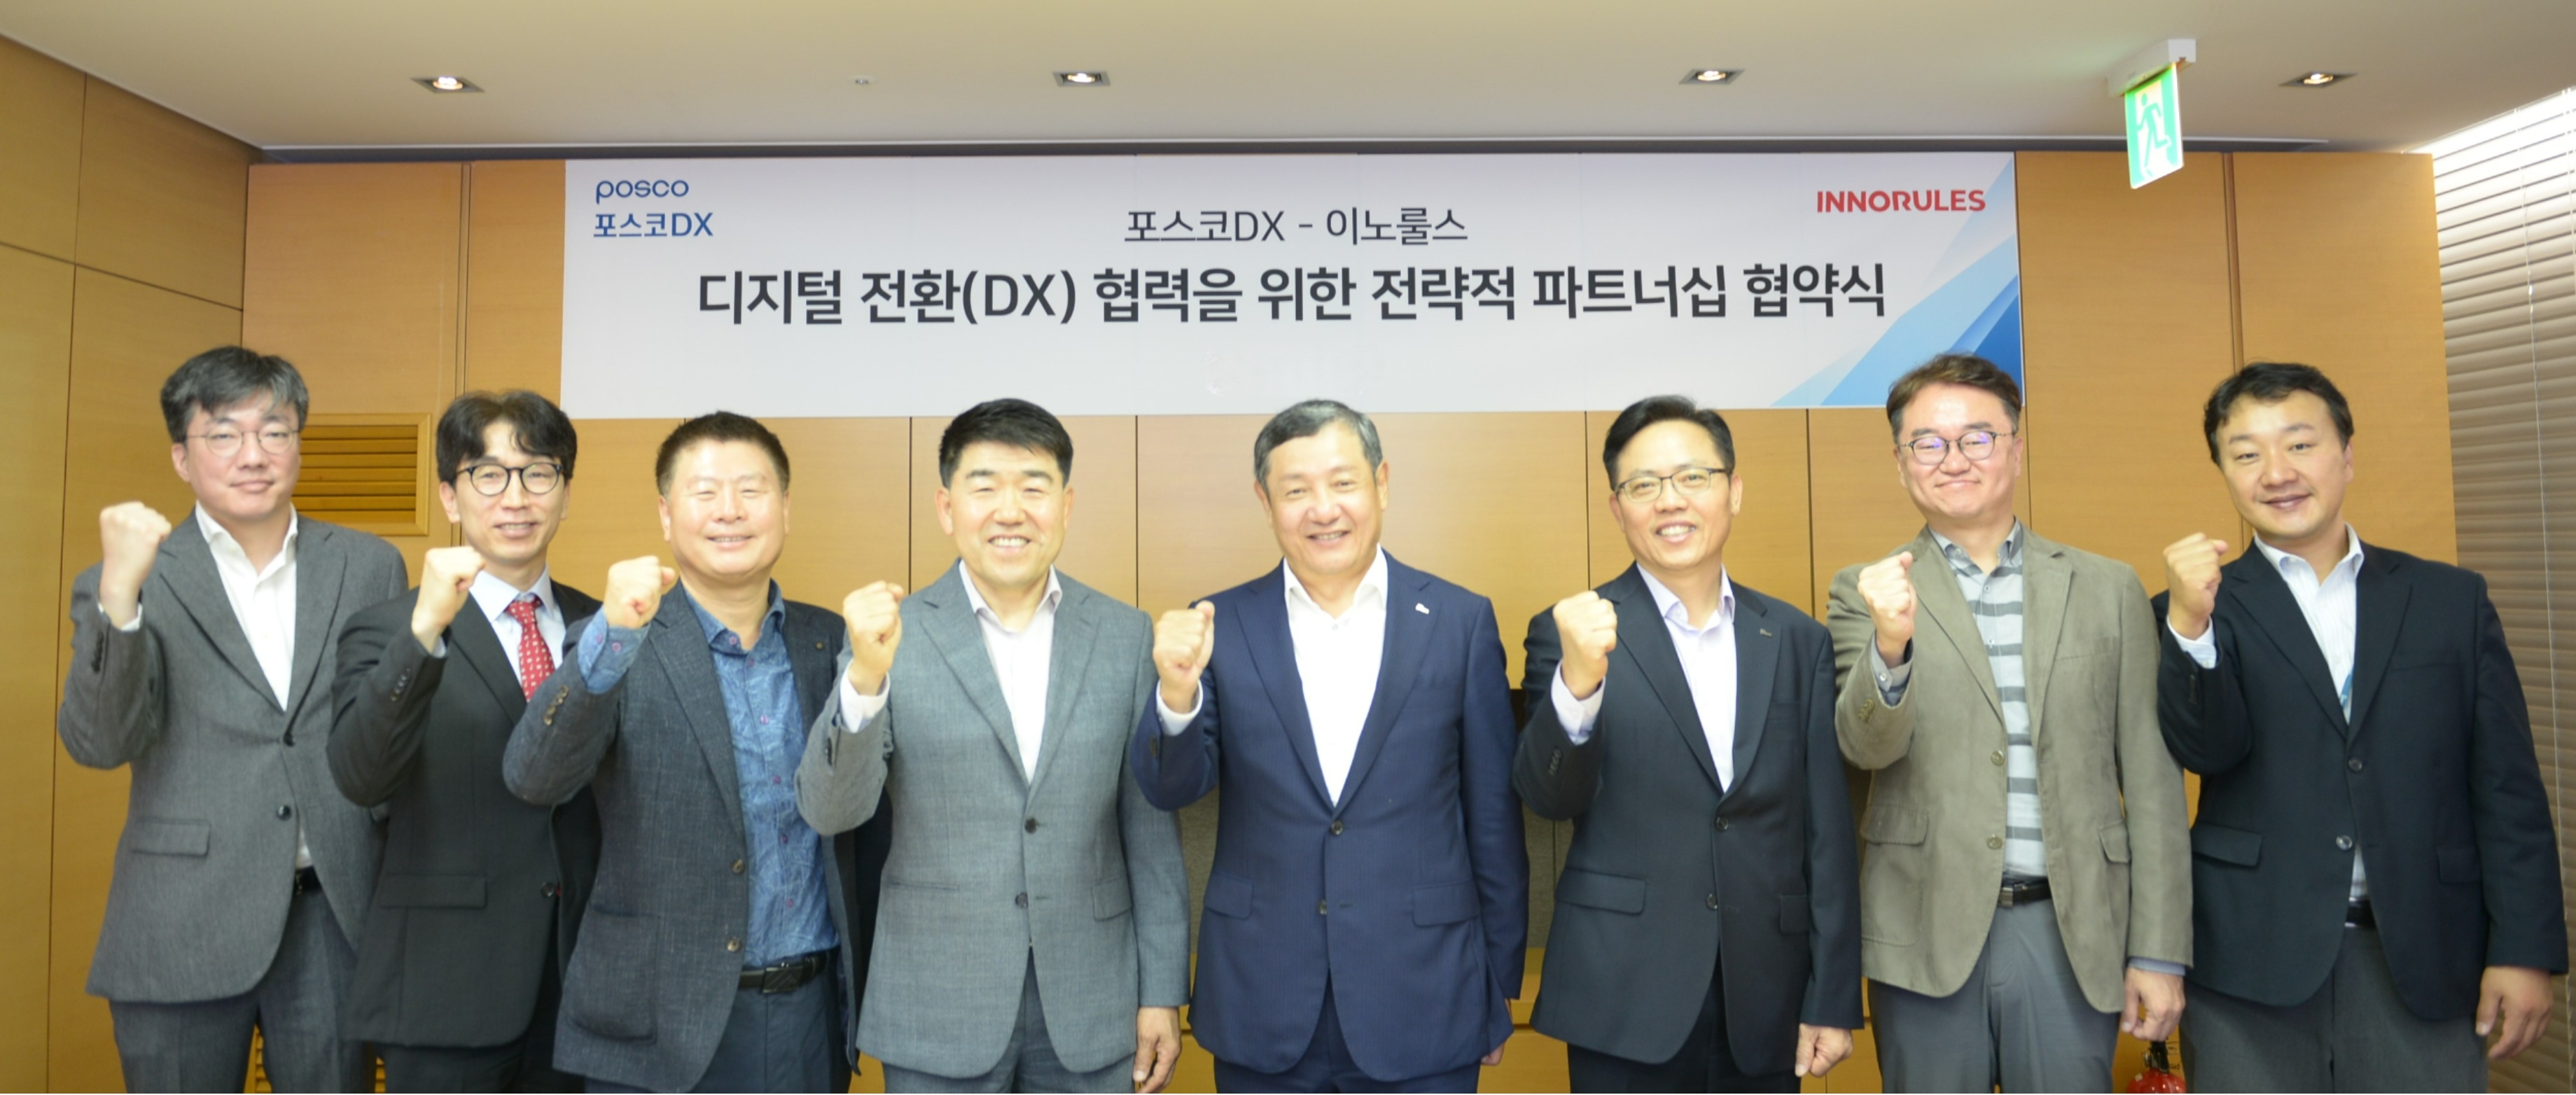 포스코DX 정덕균 사장(왼쪽에서 다섯번째)와 이노룰스 김길곤 대표(왼쪽에서 네번째)을 비롯한 회사 관계자들이 디지털 전환 사업을 위한 업무협약을 체결하고 기념촬영을 하고 있다.(사진=포스코DX)